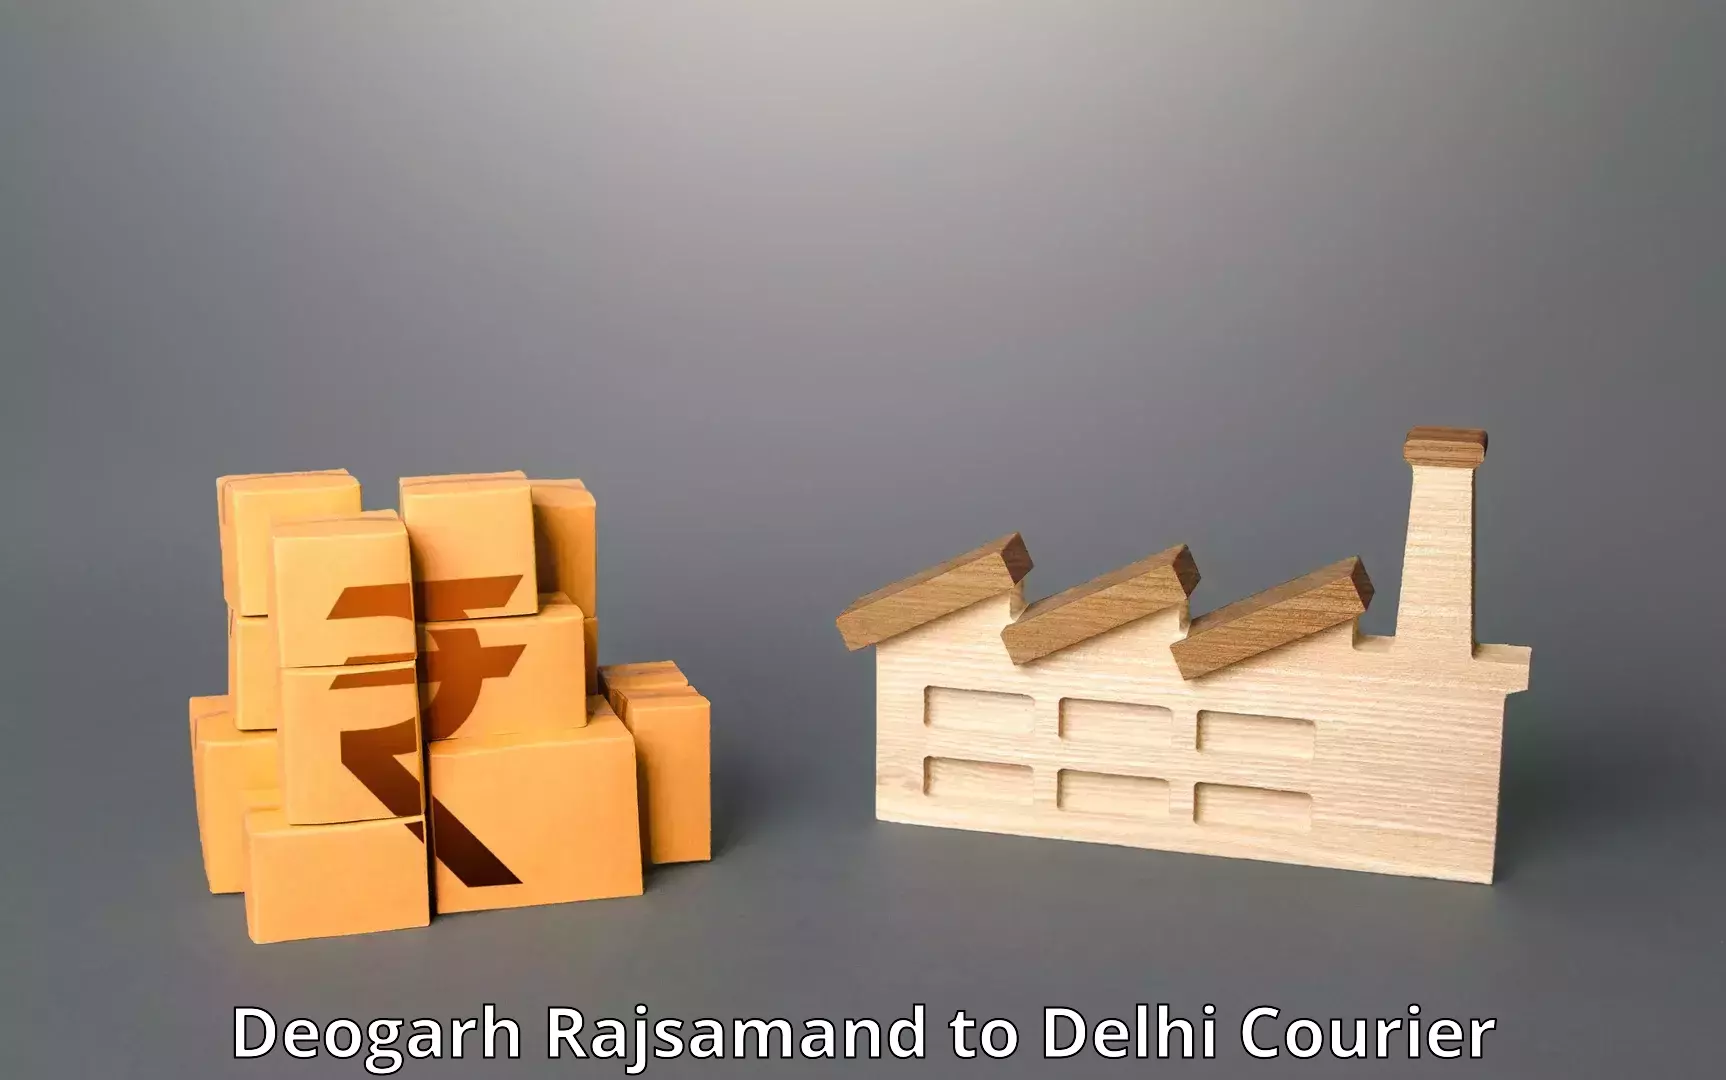 Cargo courier service Deogarh Rajsamand to Delhi